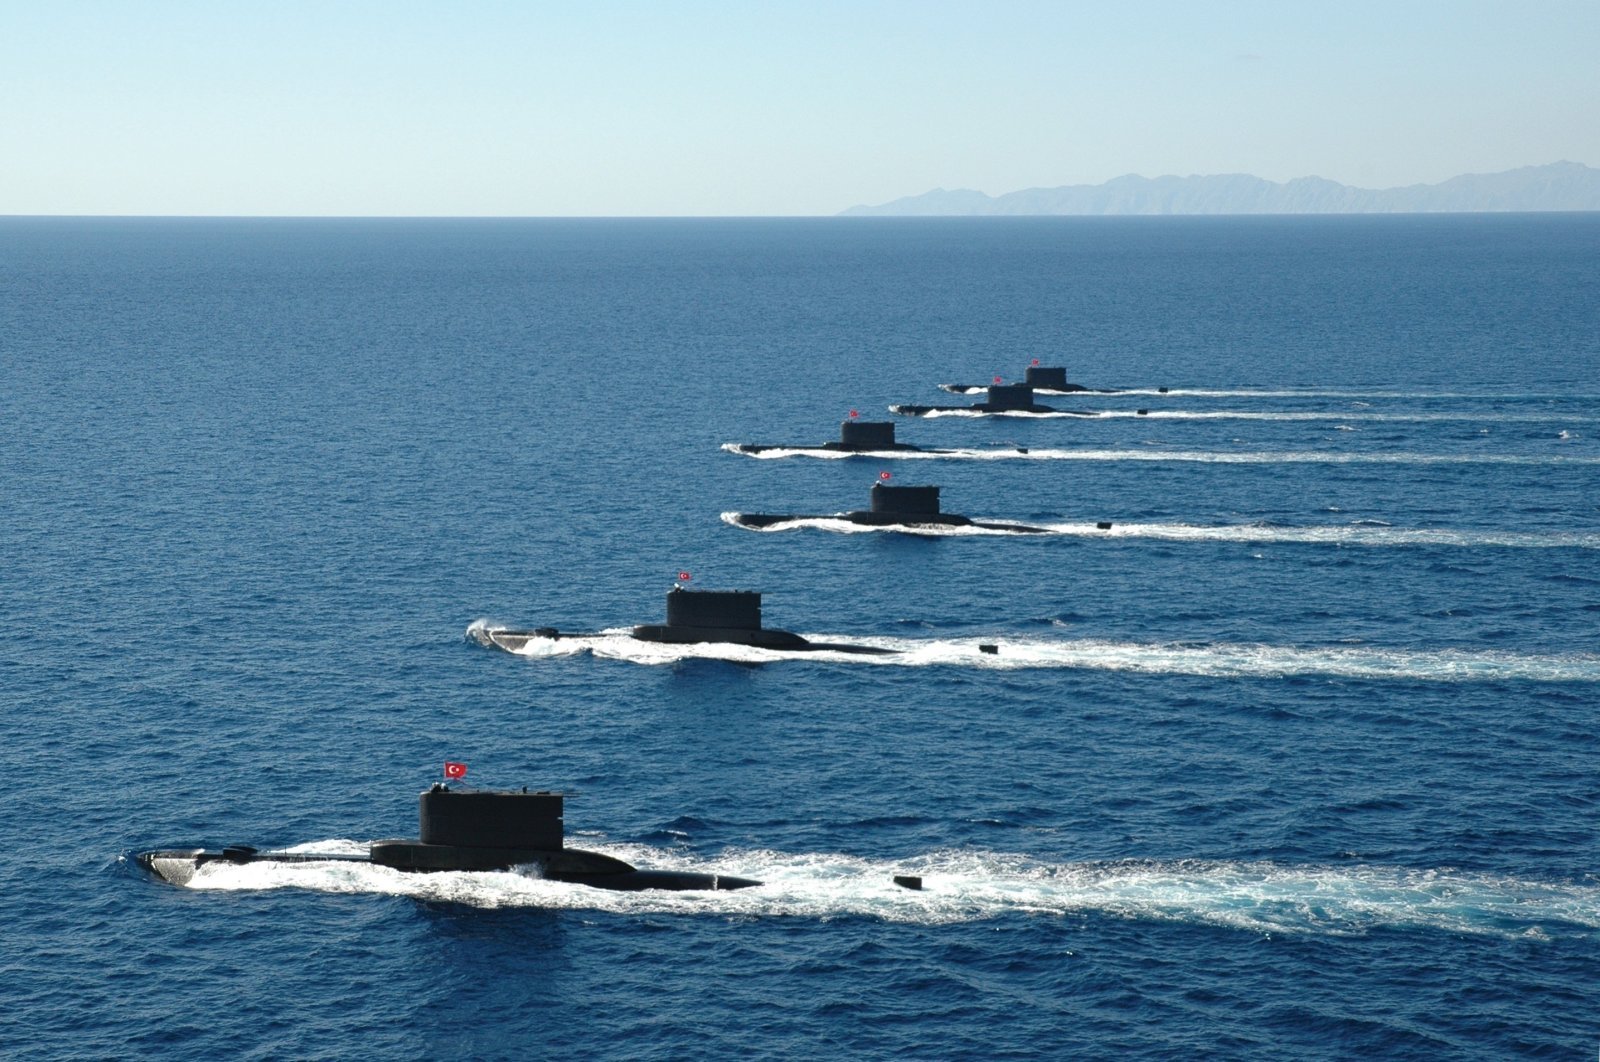 خبير دفاعي: الغواصات التركية الصغيرة ستغير قواعد اللعبة مثل الطائرات المسيرة